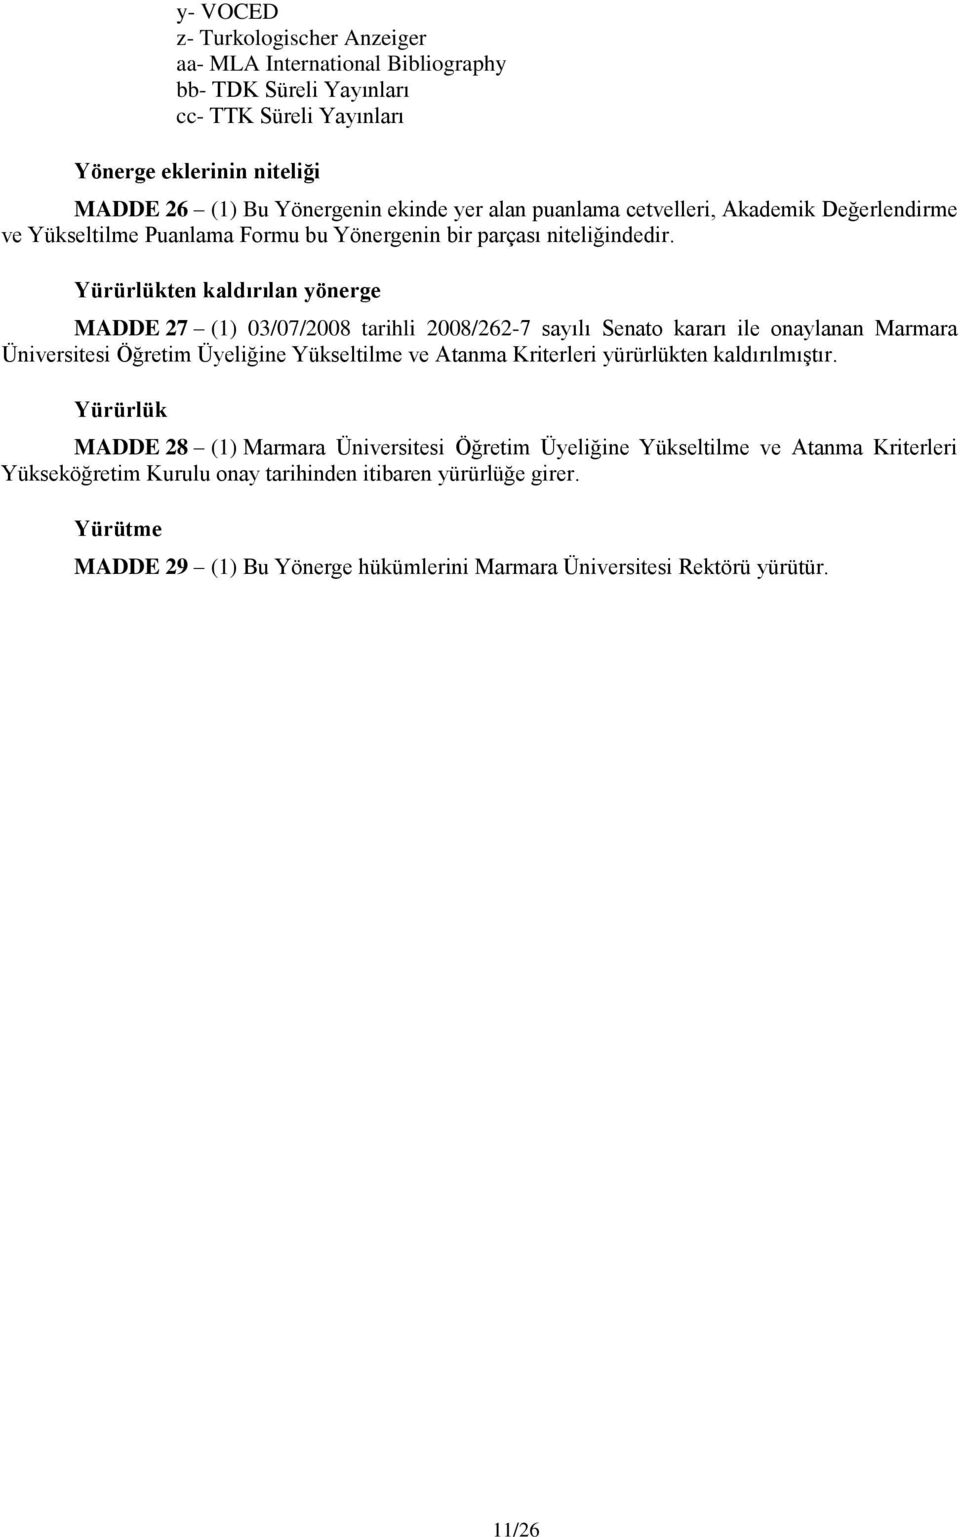 Yürürlükten kaldırılan yönerge MADDE 27 (1) 03/07/2008 tarihli 2008/262-7 sayılı Senato kararı ile onaylanan Marmara Üniversitesi Öğretim Üyeliğine Yükseltilme ve Atanma Kriterleri